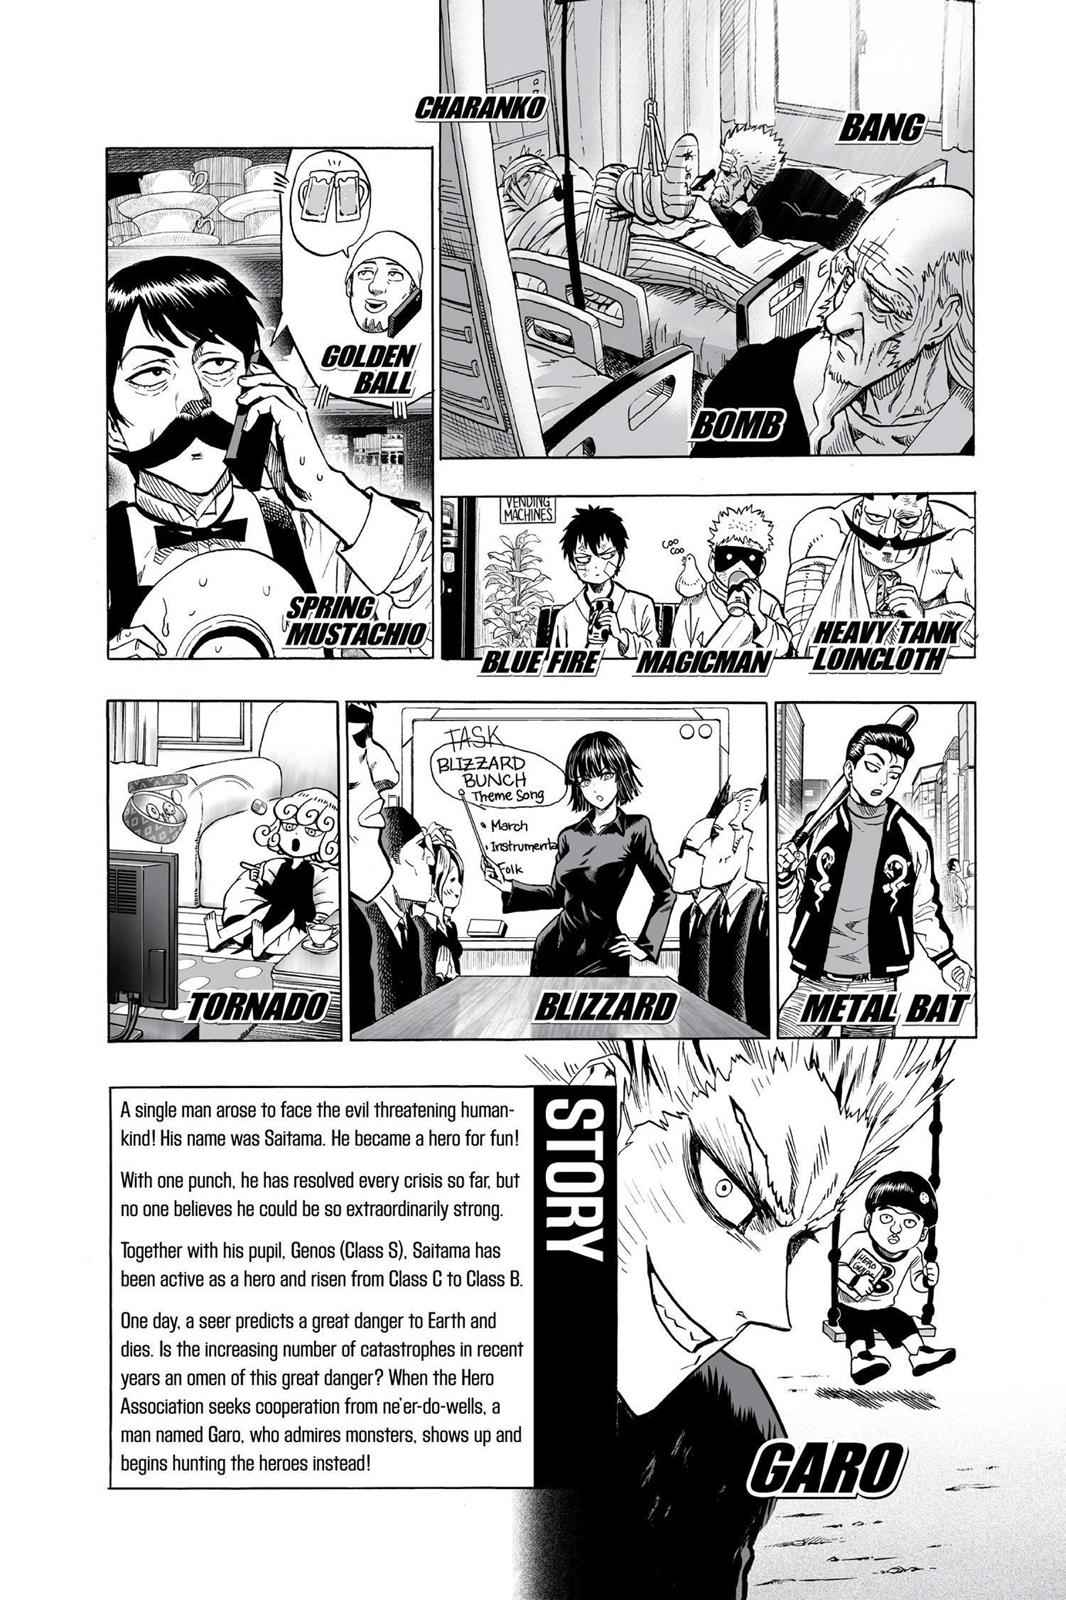 Senritsu no Tatsumaki in OPM Manga Covers